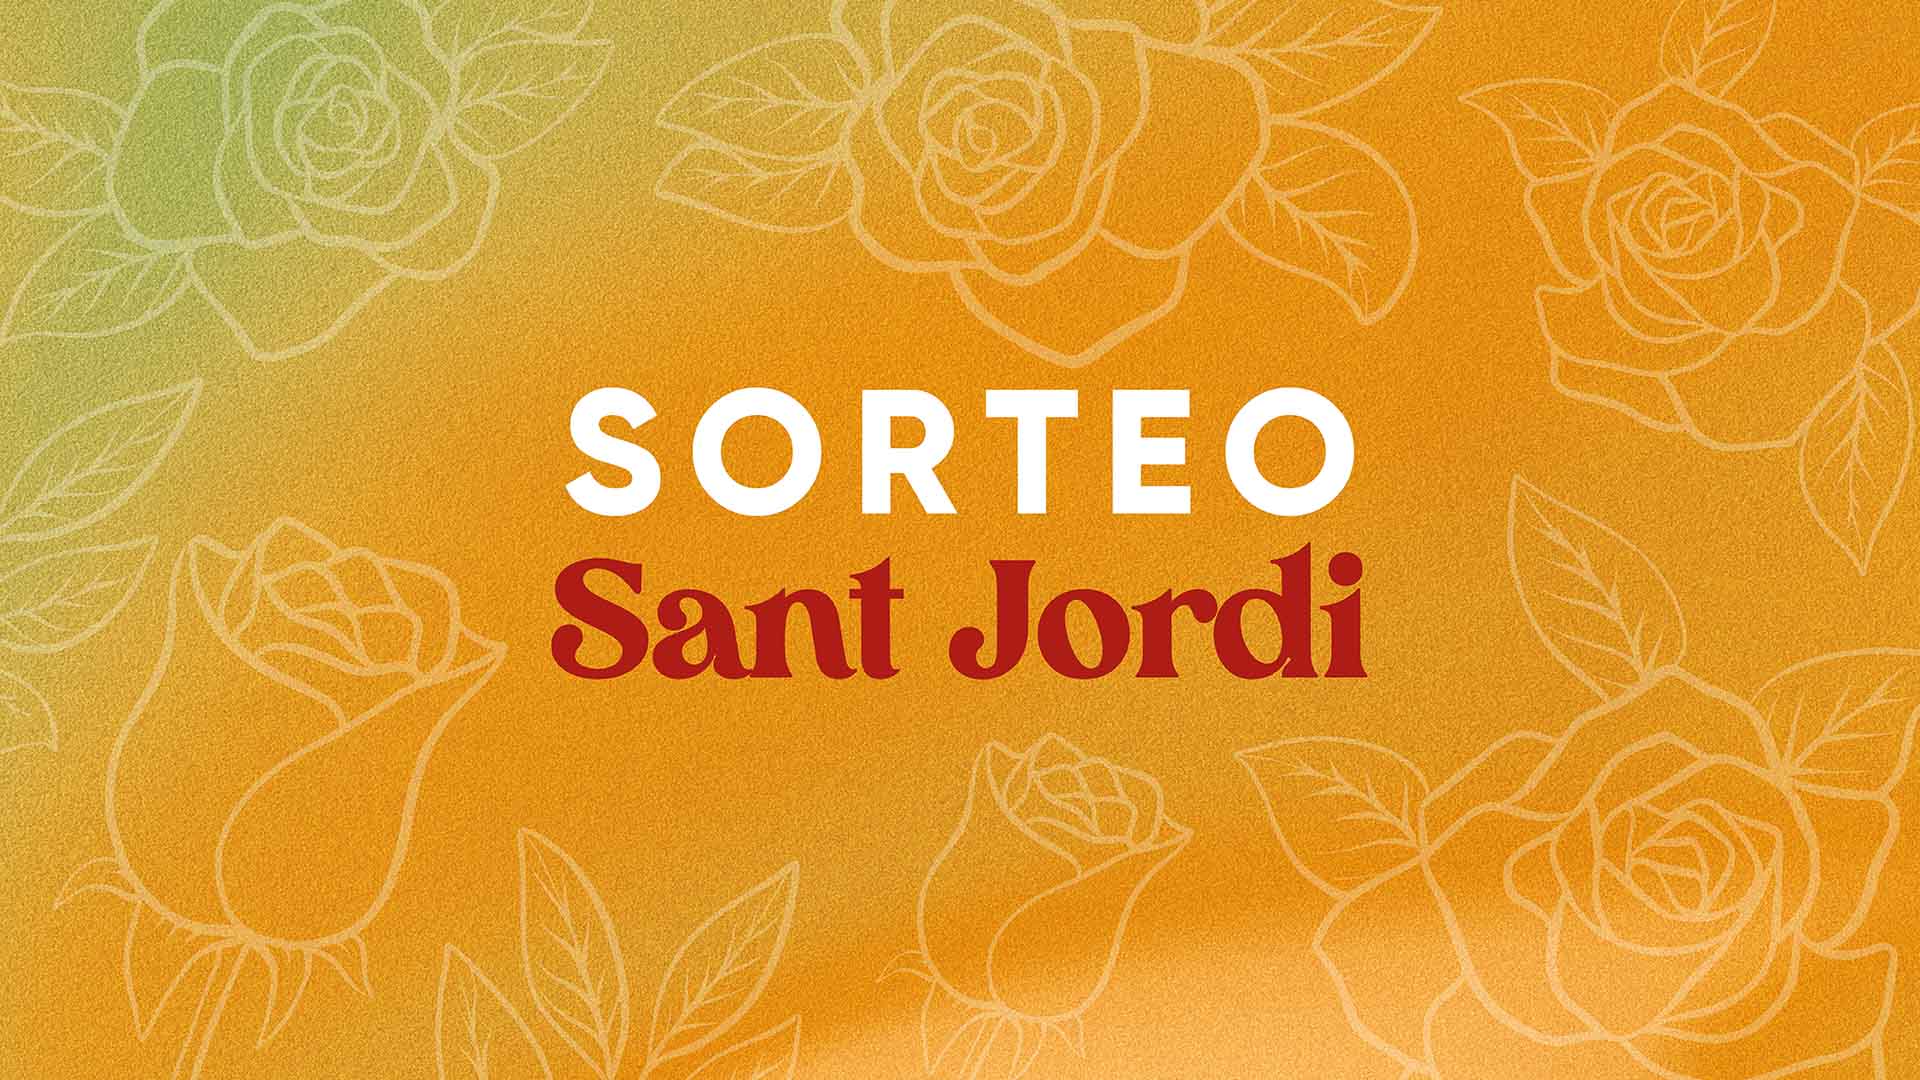 Llega Sant Jordi, uno de los días más bonitos del año para todos aquellos residen en Catalunya. En Grupo Todoplano somos apasionados de este día, así que, os traemos un sorteo para que sigáis disfrutando de la magia de los libros.